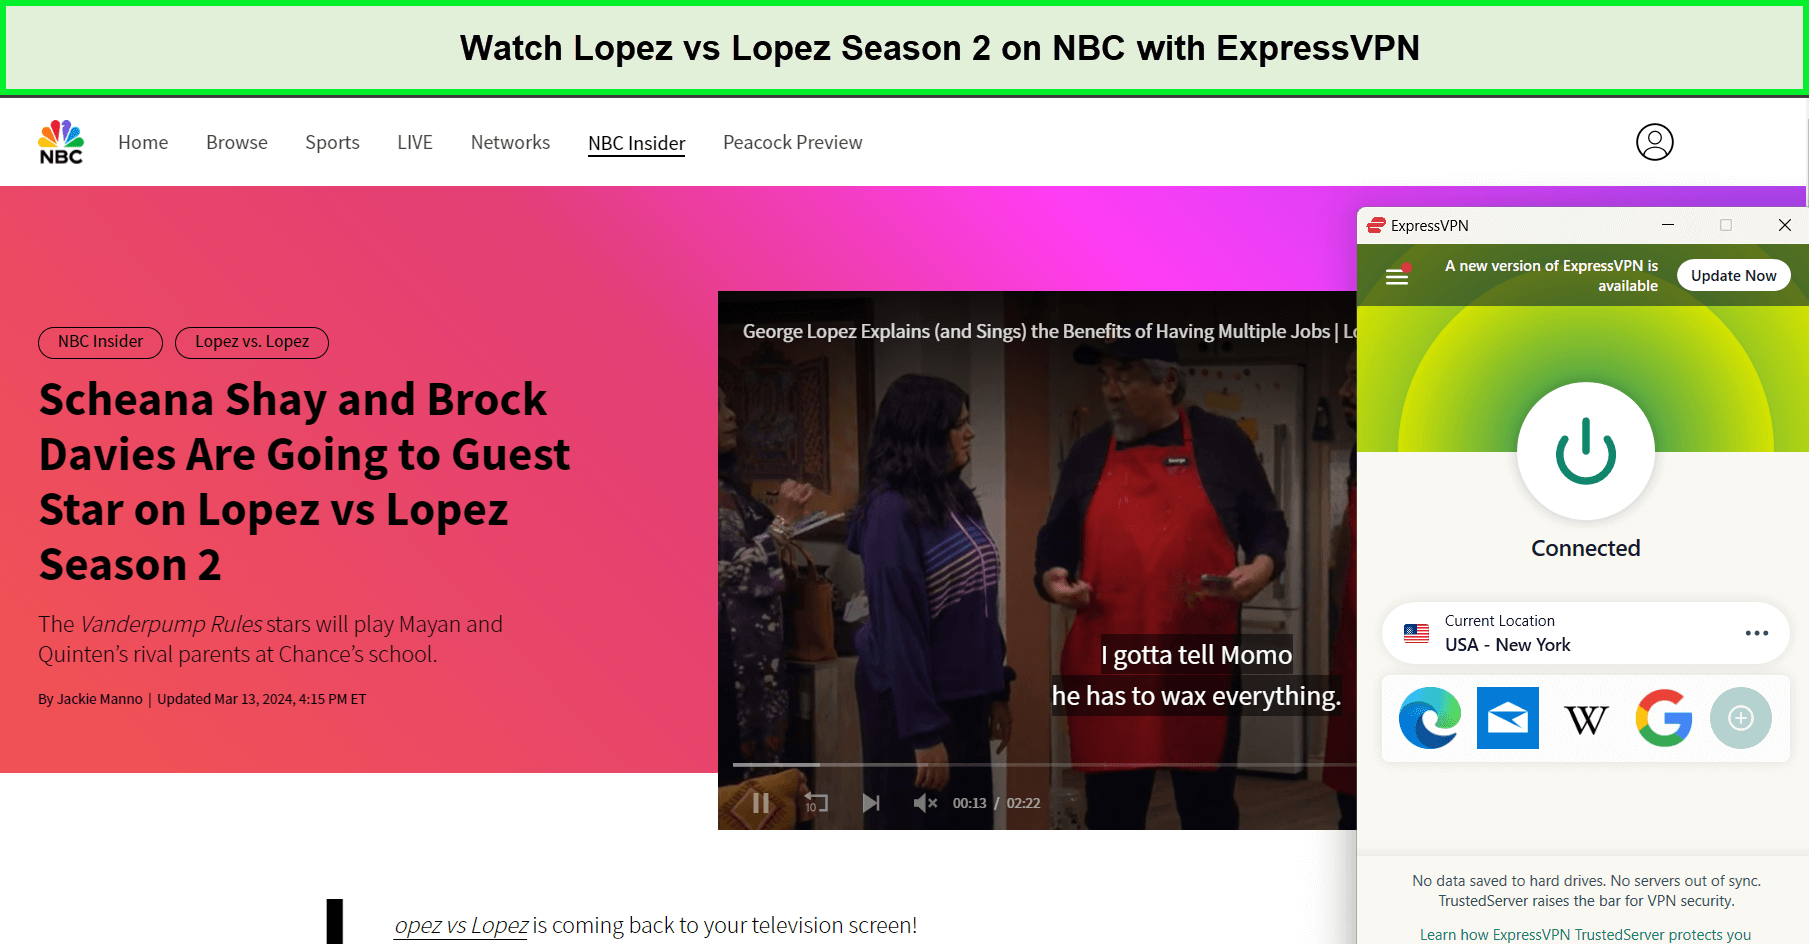 Watch-Lopez-vs-Lopez-Season-2-in-UK-on-NBC